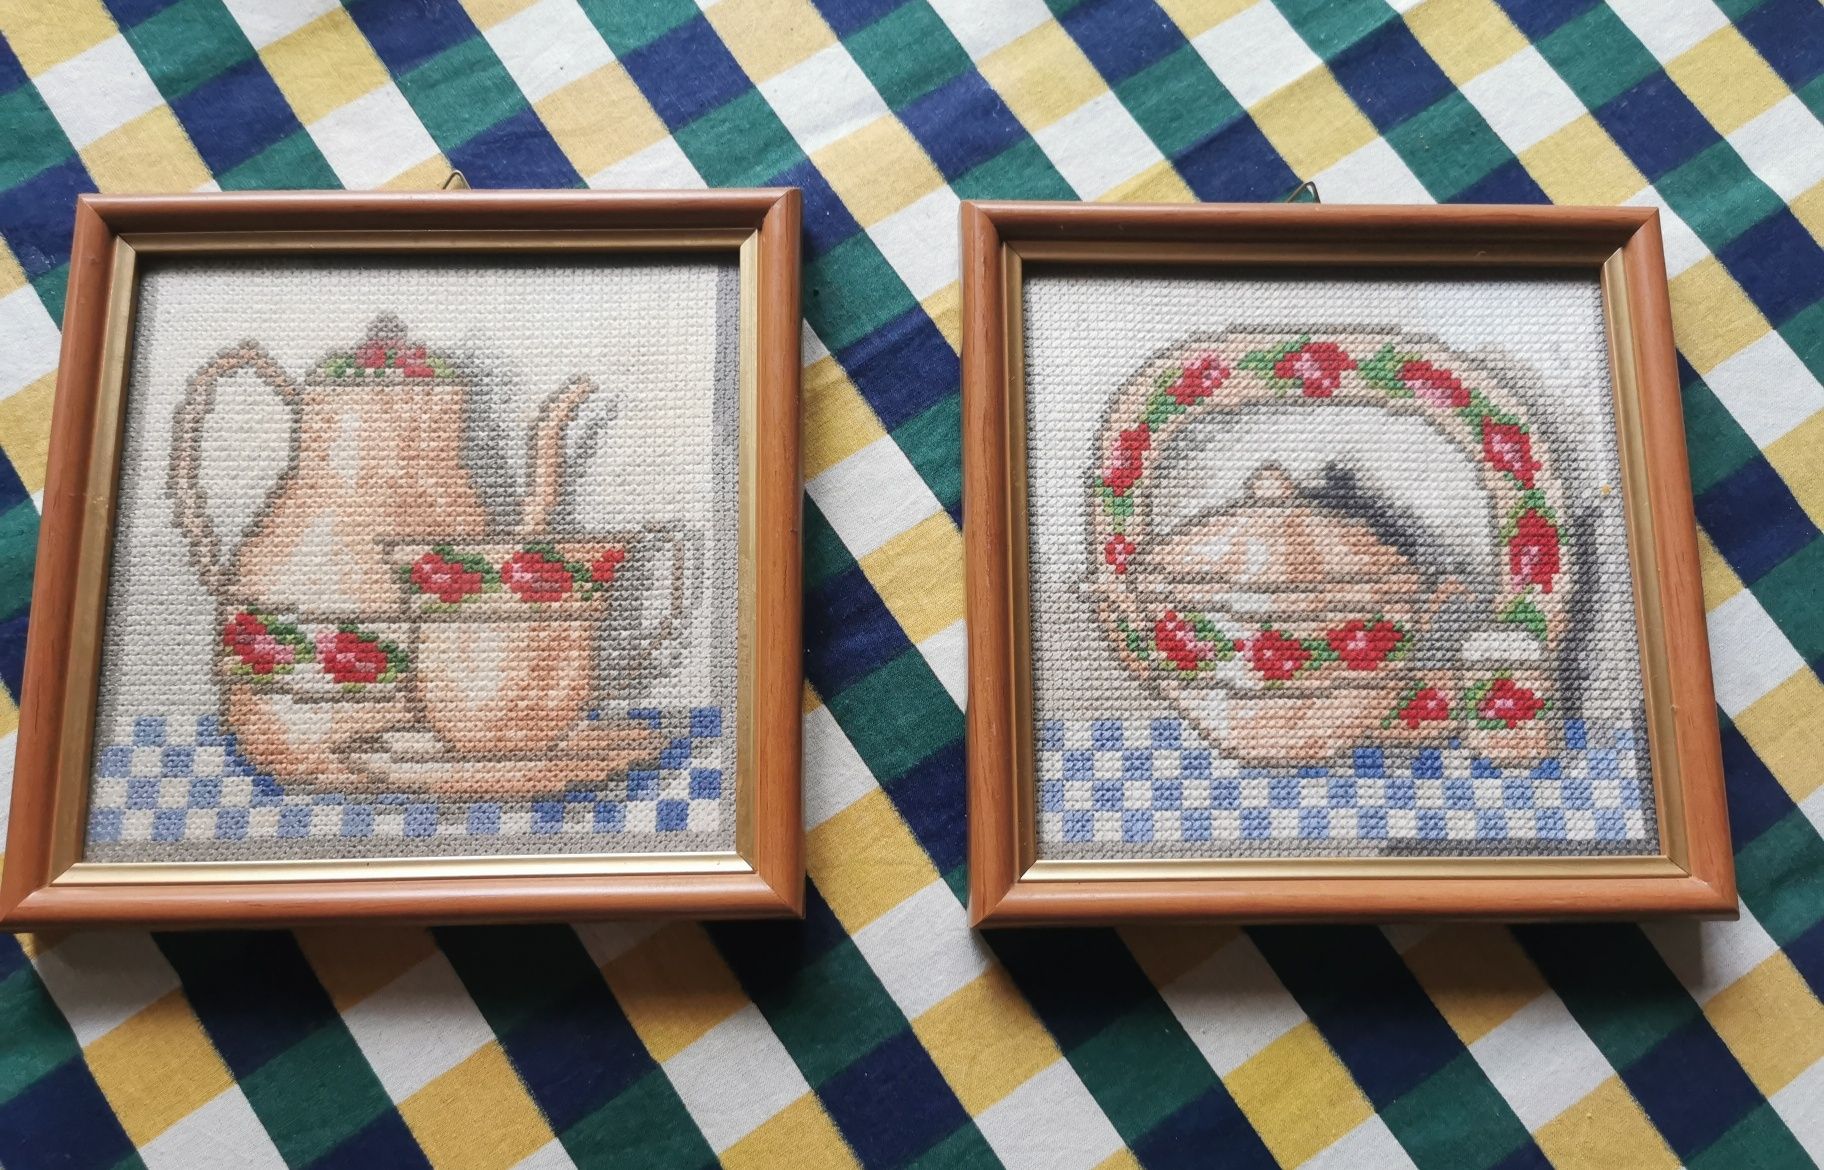 Dwa obrazki haft krzyżykowy